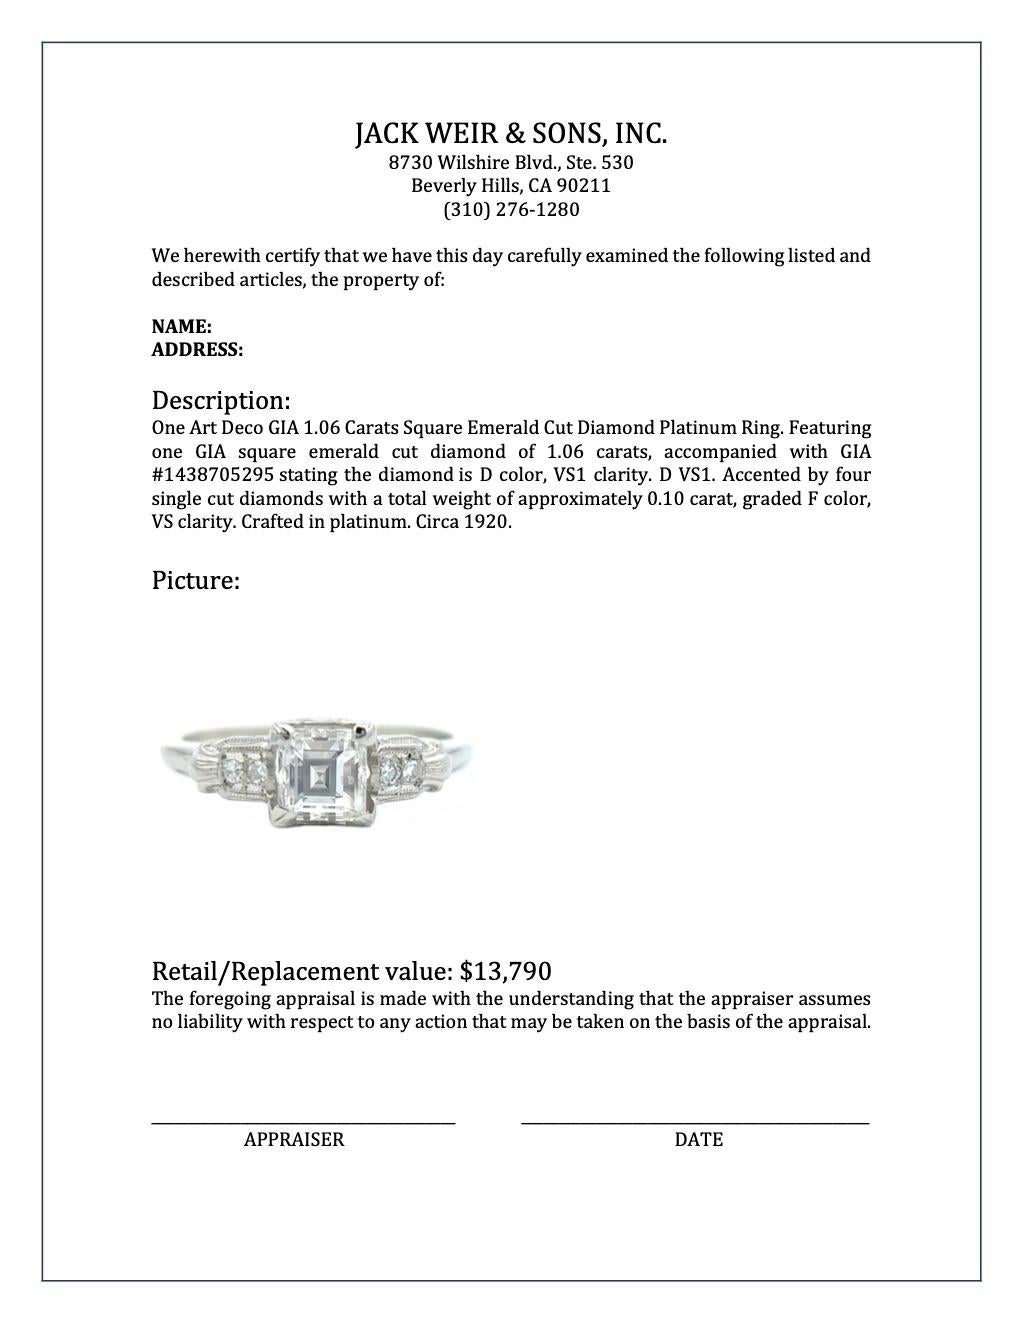 Art Deco GIA 1.06 Carats Square Emerald Cut Diamond Platinum Ring 4